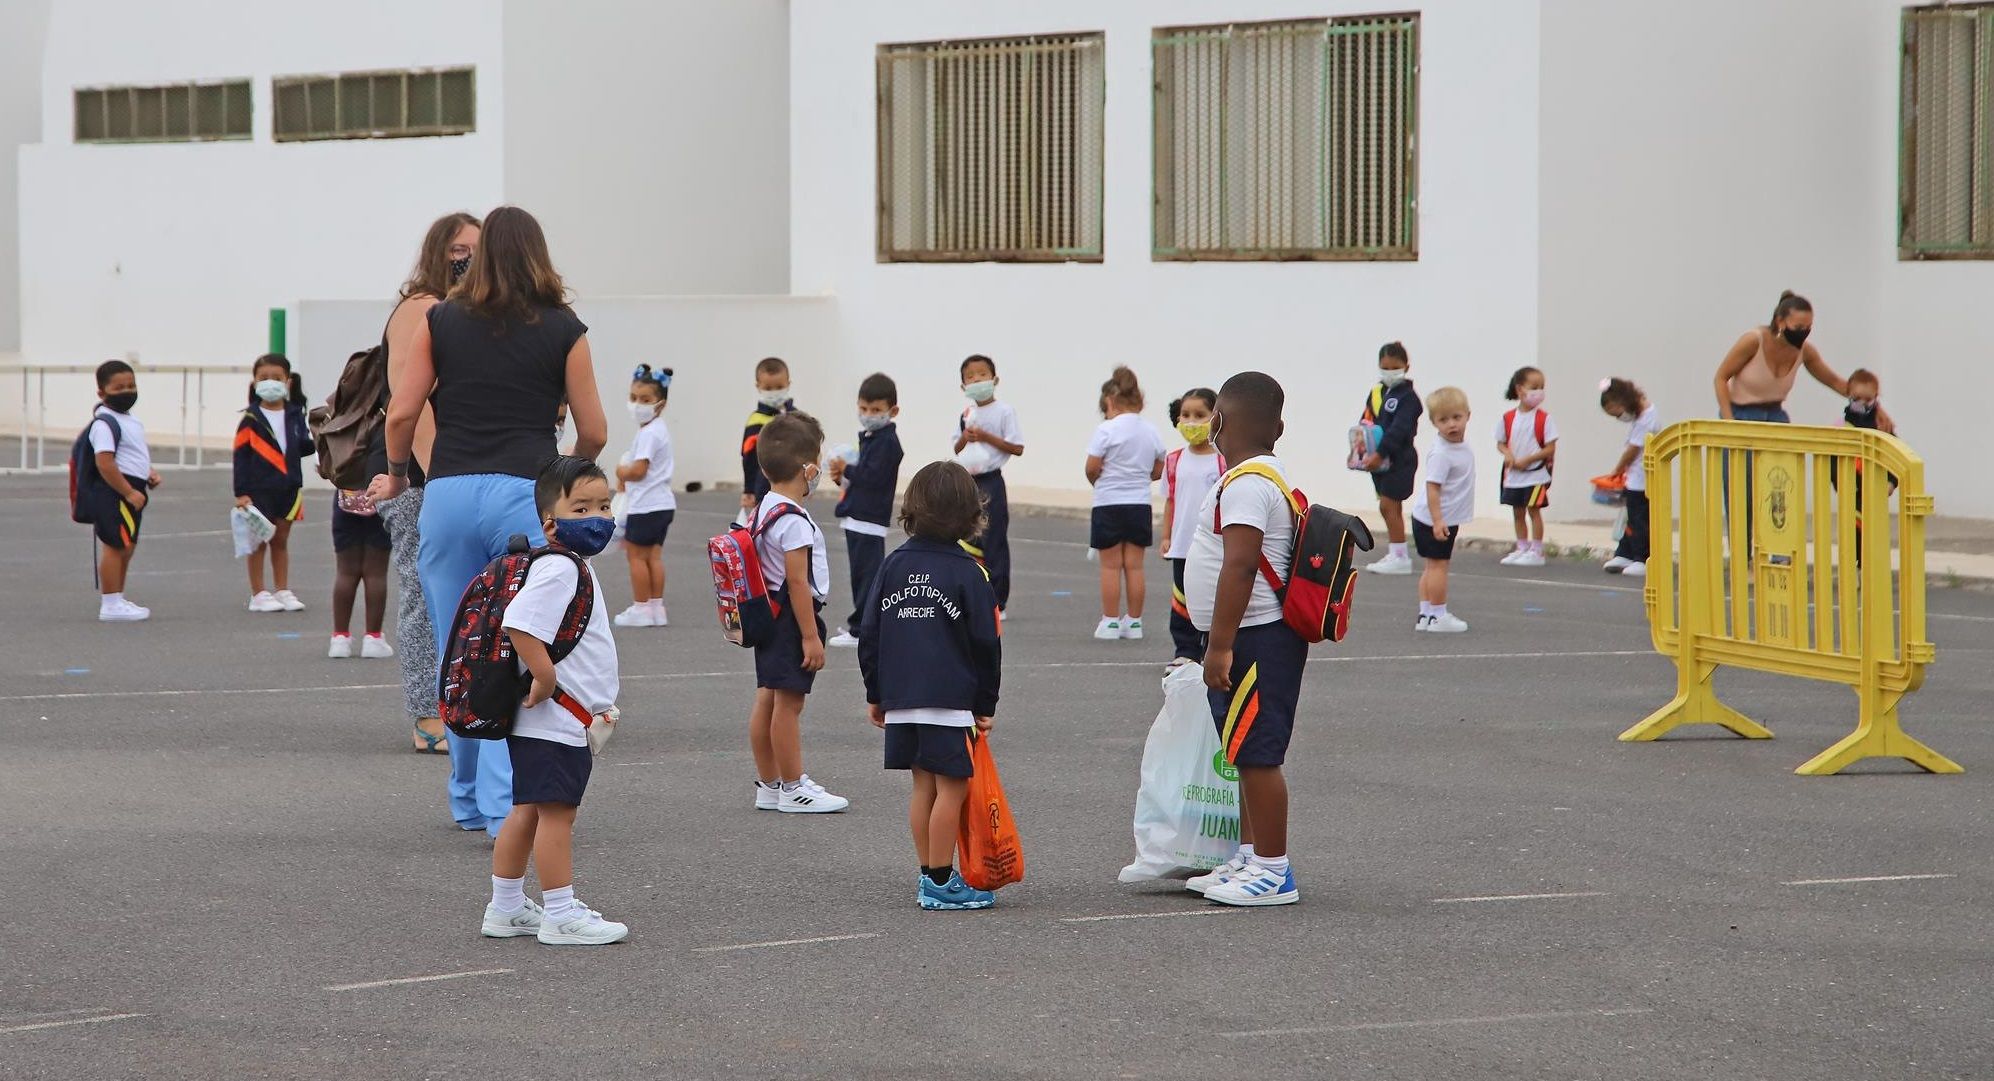 Primera día de colegio en Arrecife tras el parón de las clases presenciales por el coronavirus